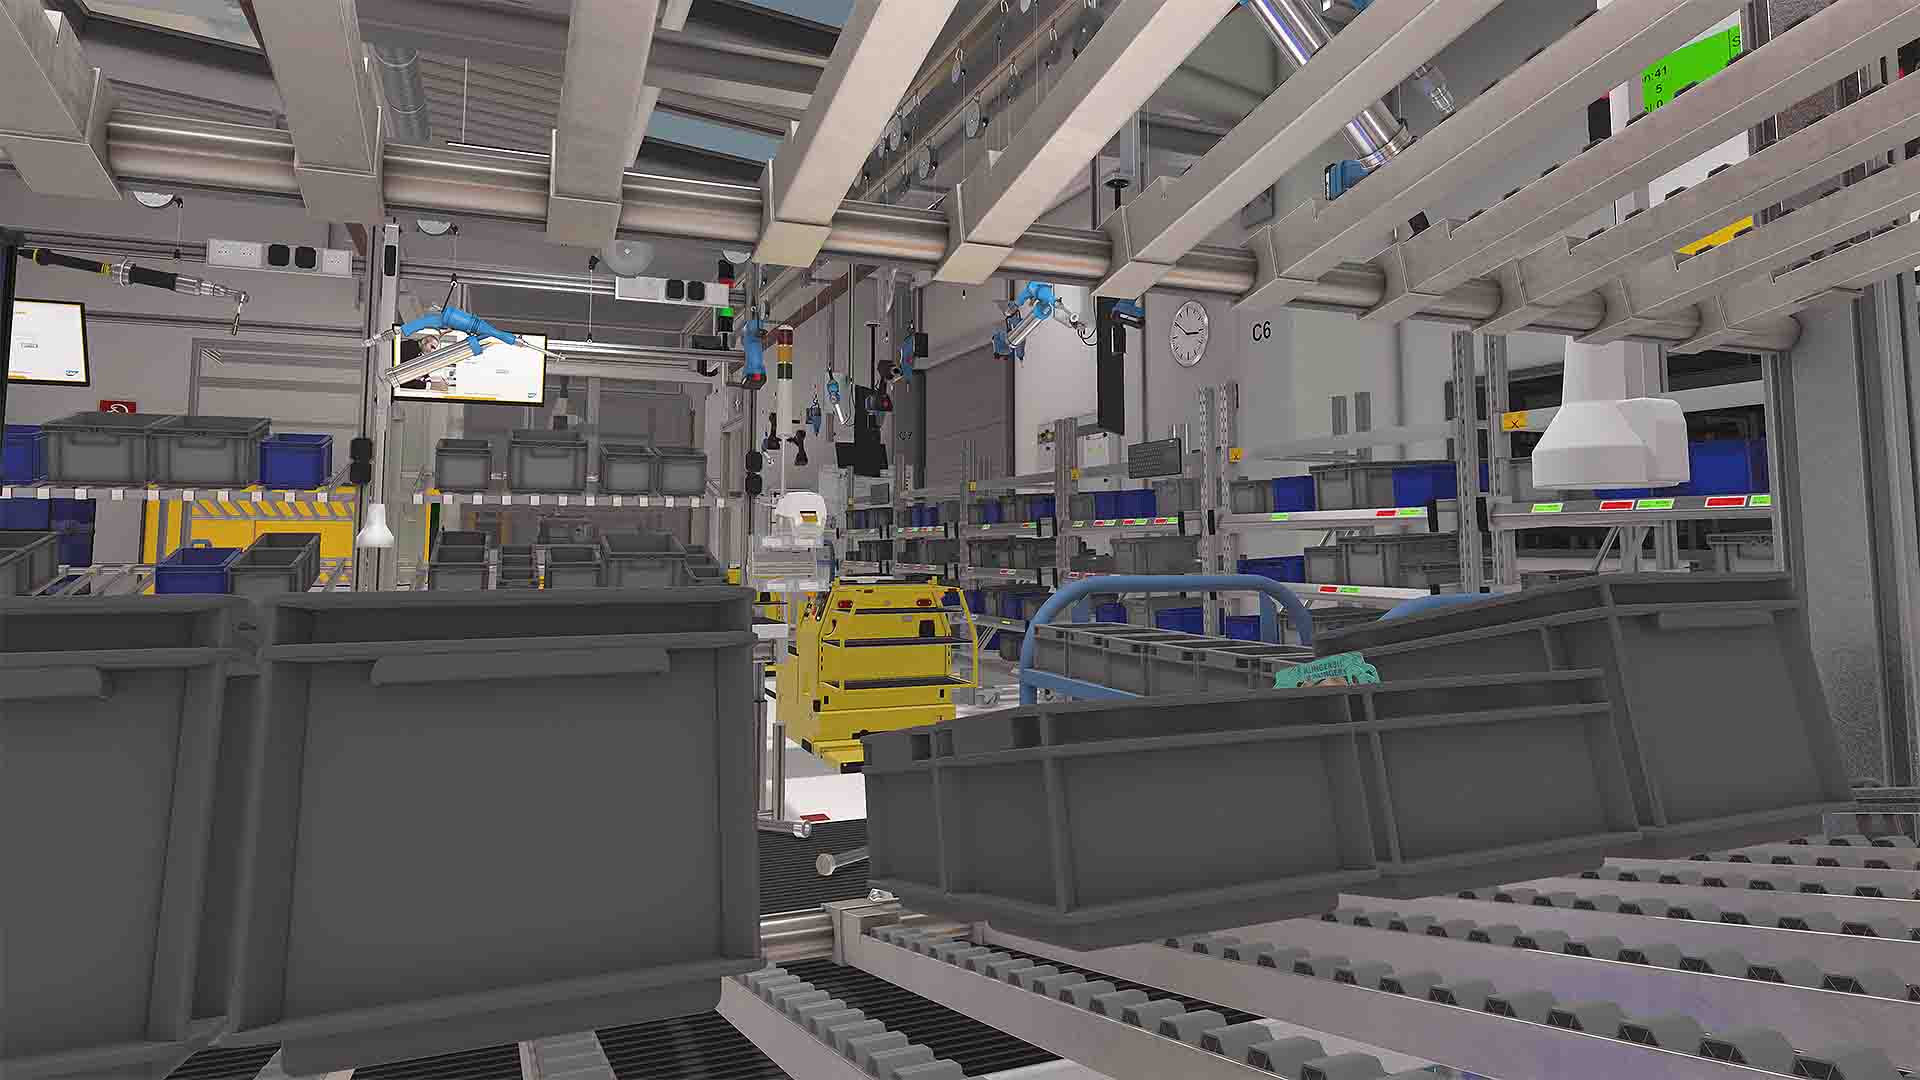 BRP-Rotax nutzt Virtual Reality, um seine Mitarbeiter effektiv, kostengünstig und standardisiert in verschiedenen Produktionsprozessen zu schulen.